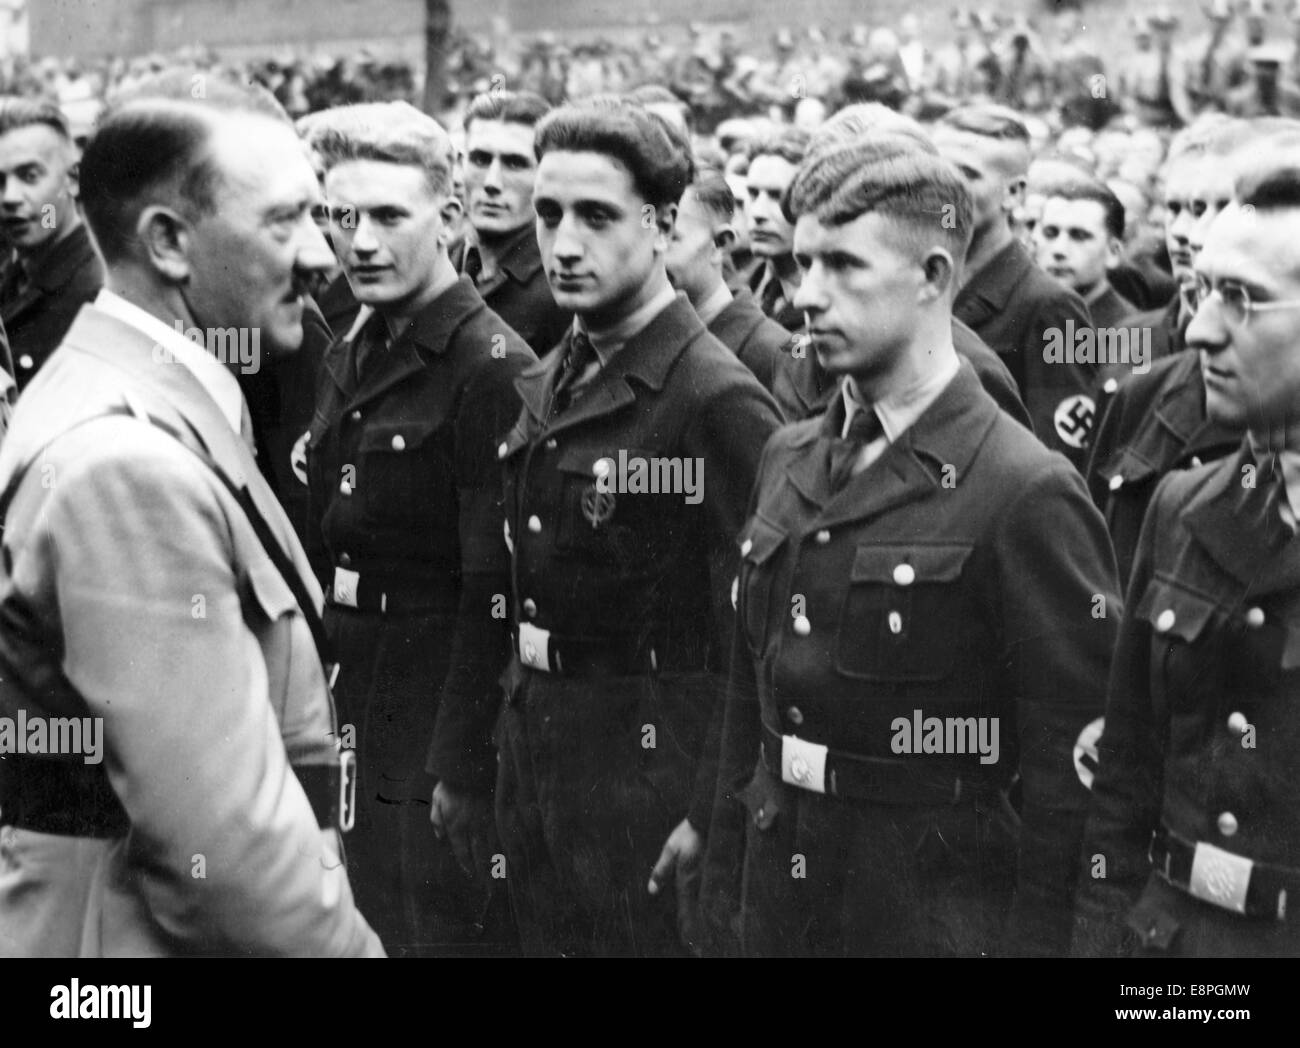 Nürnberger Rallye 1936 in Nürnberg – Adolf Hitler erwartet eine Aufstellung der Werkscharen in der Stadt. Ein Werkschar war eine uniformierte Gruppe der Deutschen Front für Arbeit (DAF) in einer Fabrik oder einem Unternehmen. (Qualitätsmängel aufgrund der historischen Bildkopie) Fotoarchiv für Zeitgeschichtee - KEIN KABELDIENST - Stockfoto